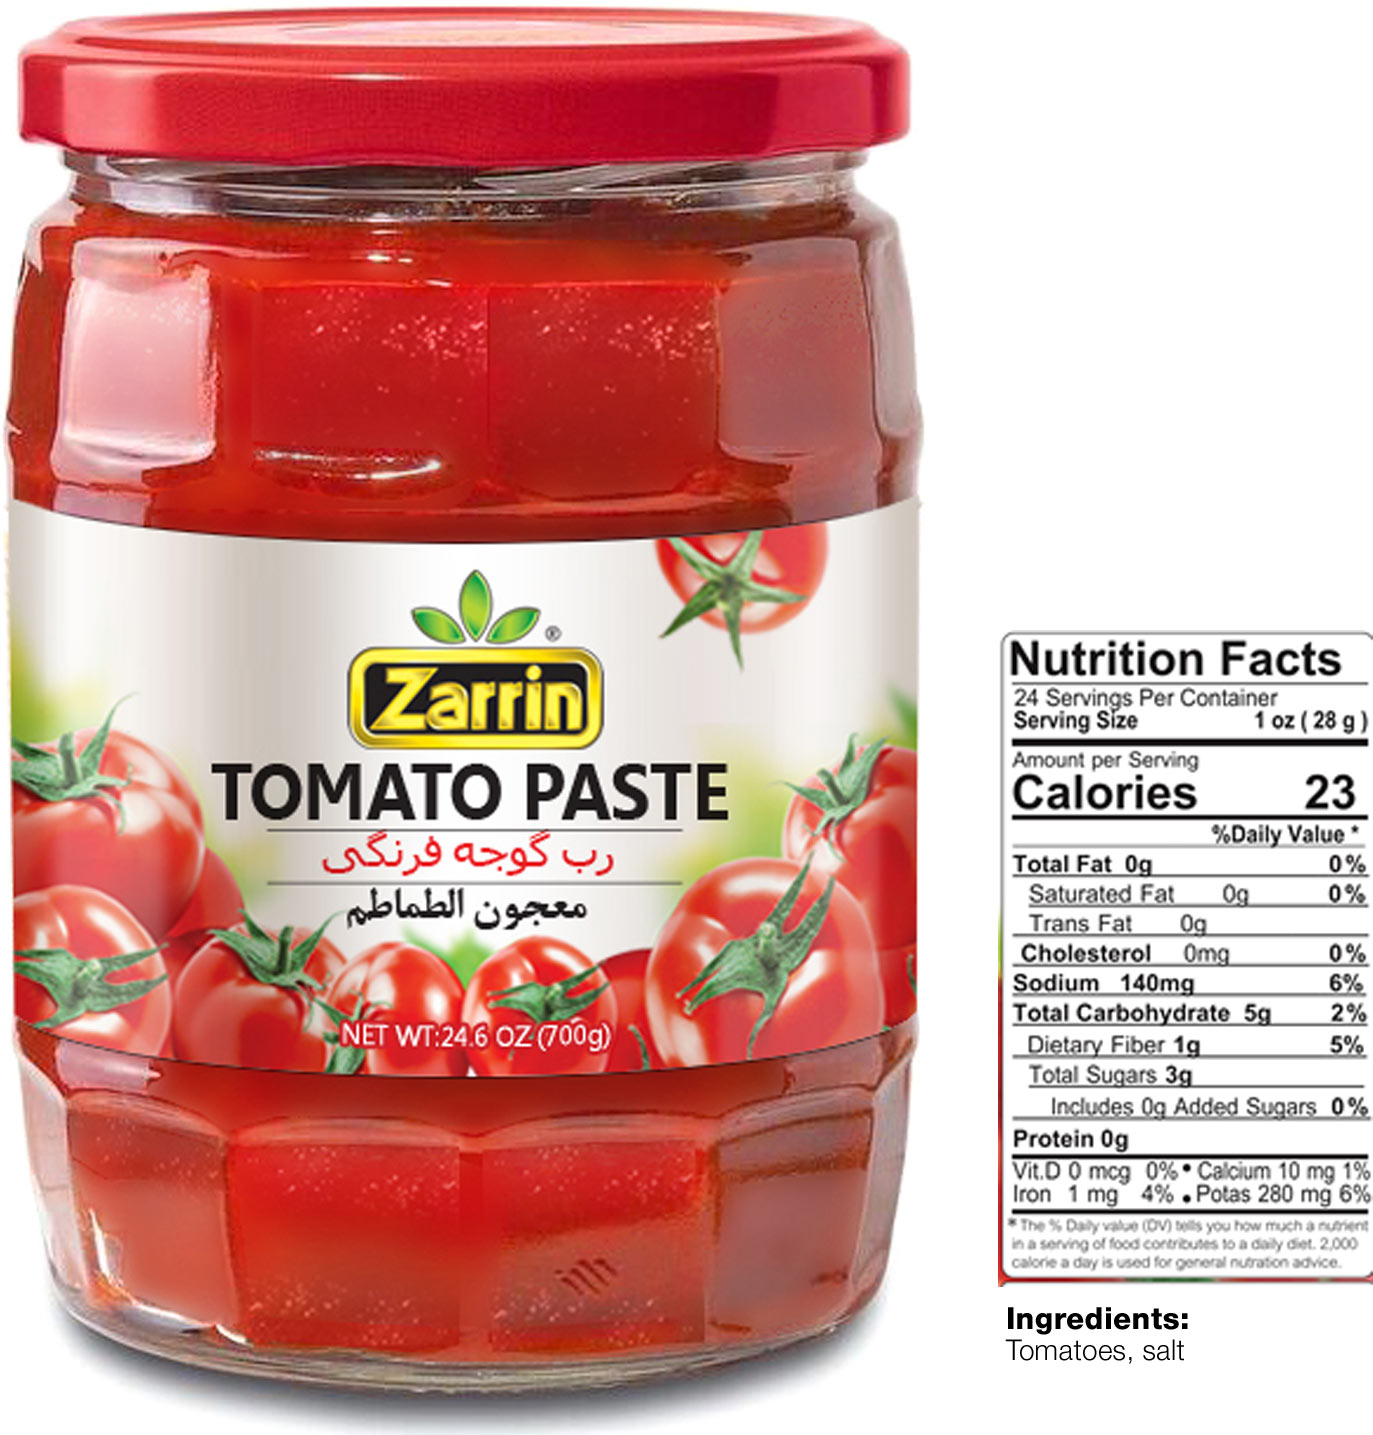 Zarrin tomato paste in 24.6 oz glass jar.